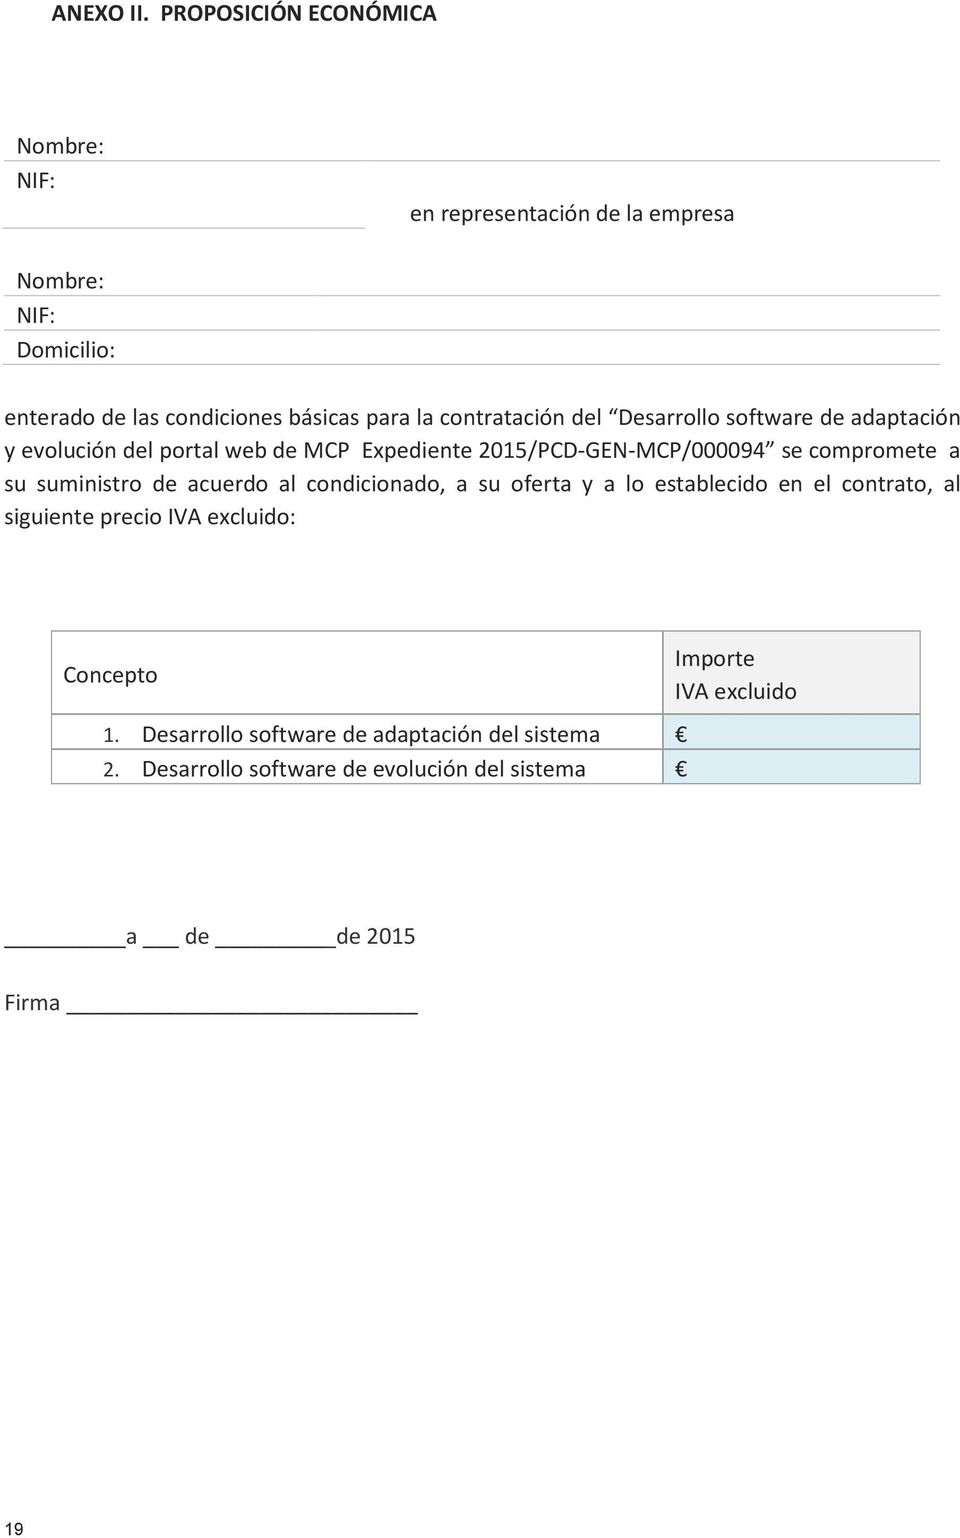 contratación del Desarrollo software de adaptación y evolución del portal web de MCP Expediente 2015/PCD-GEN-MCP/000094 se compromete a